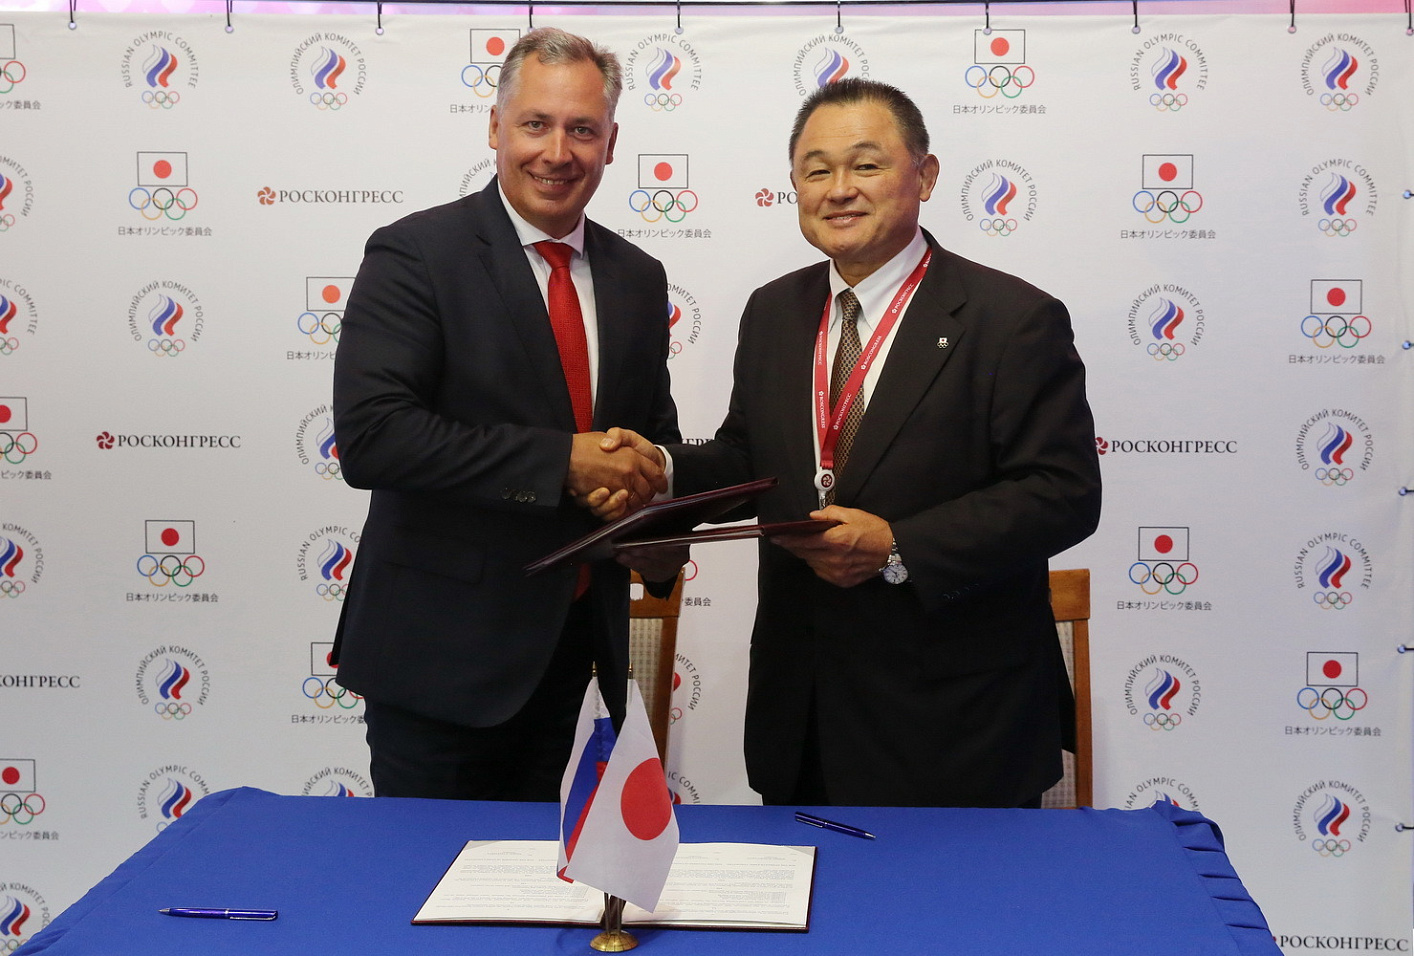 Олимпийский комитет России отметил возможности ВЭФ  для расширения международного сотрудничества в спорте